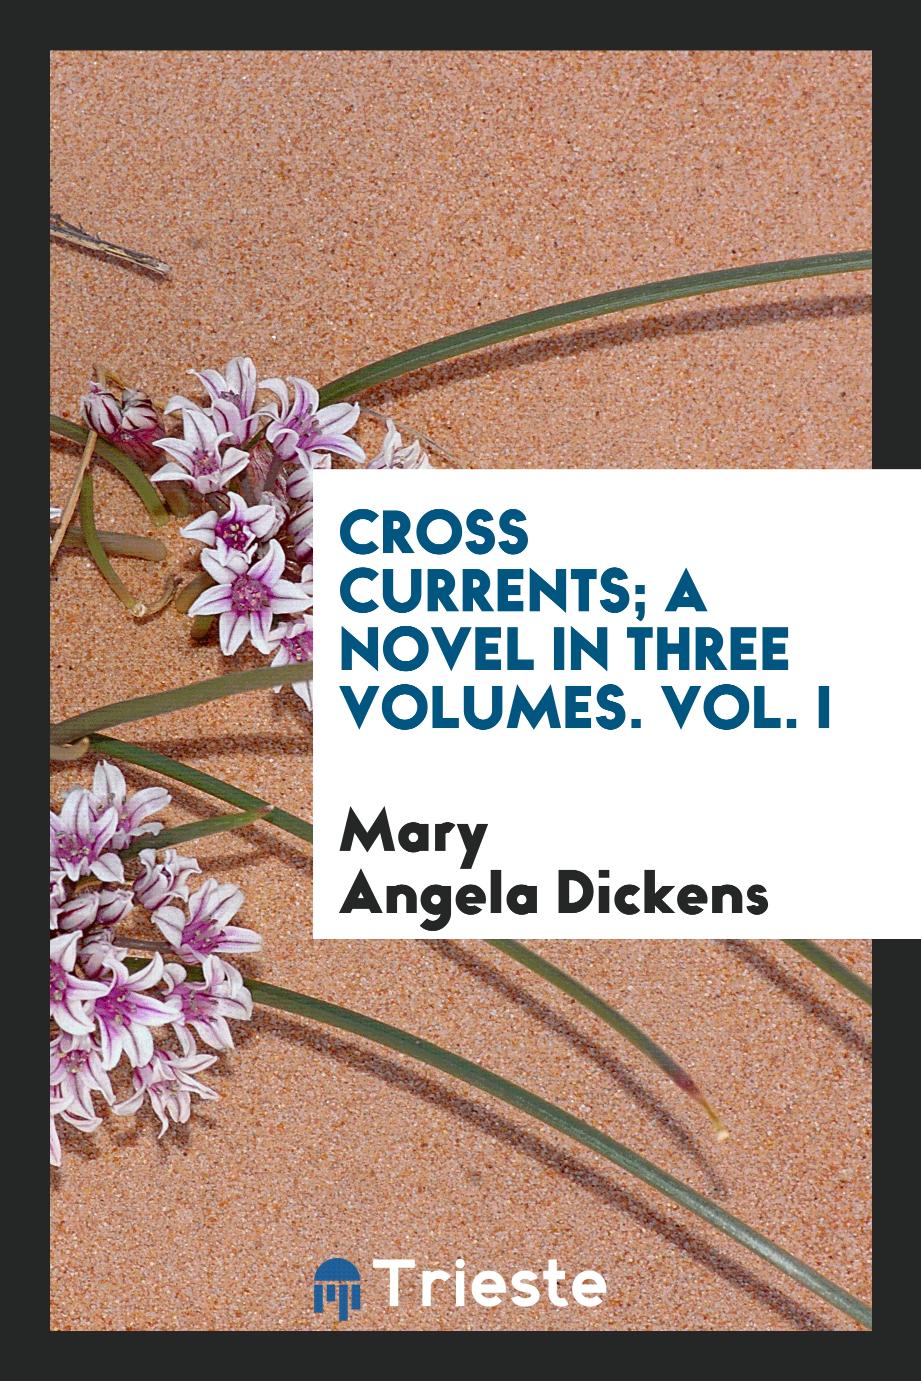 Cross currents; a novel in three volumes. Vol. I